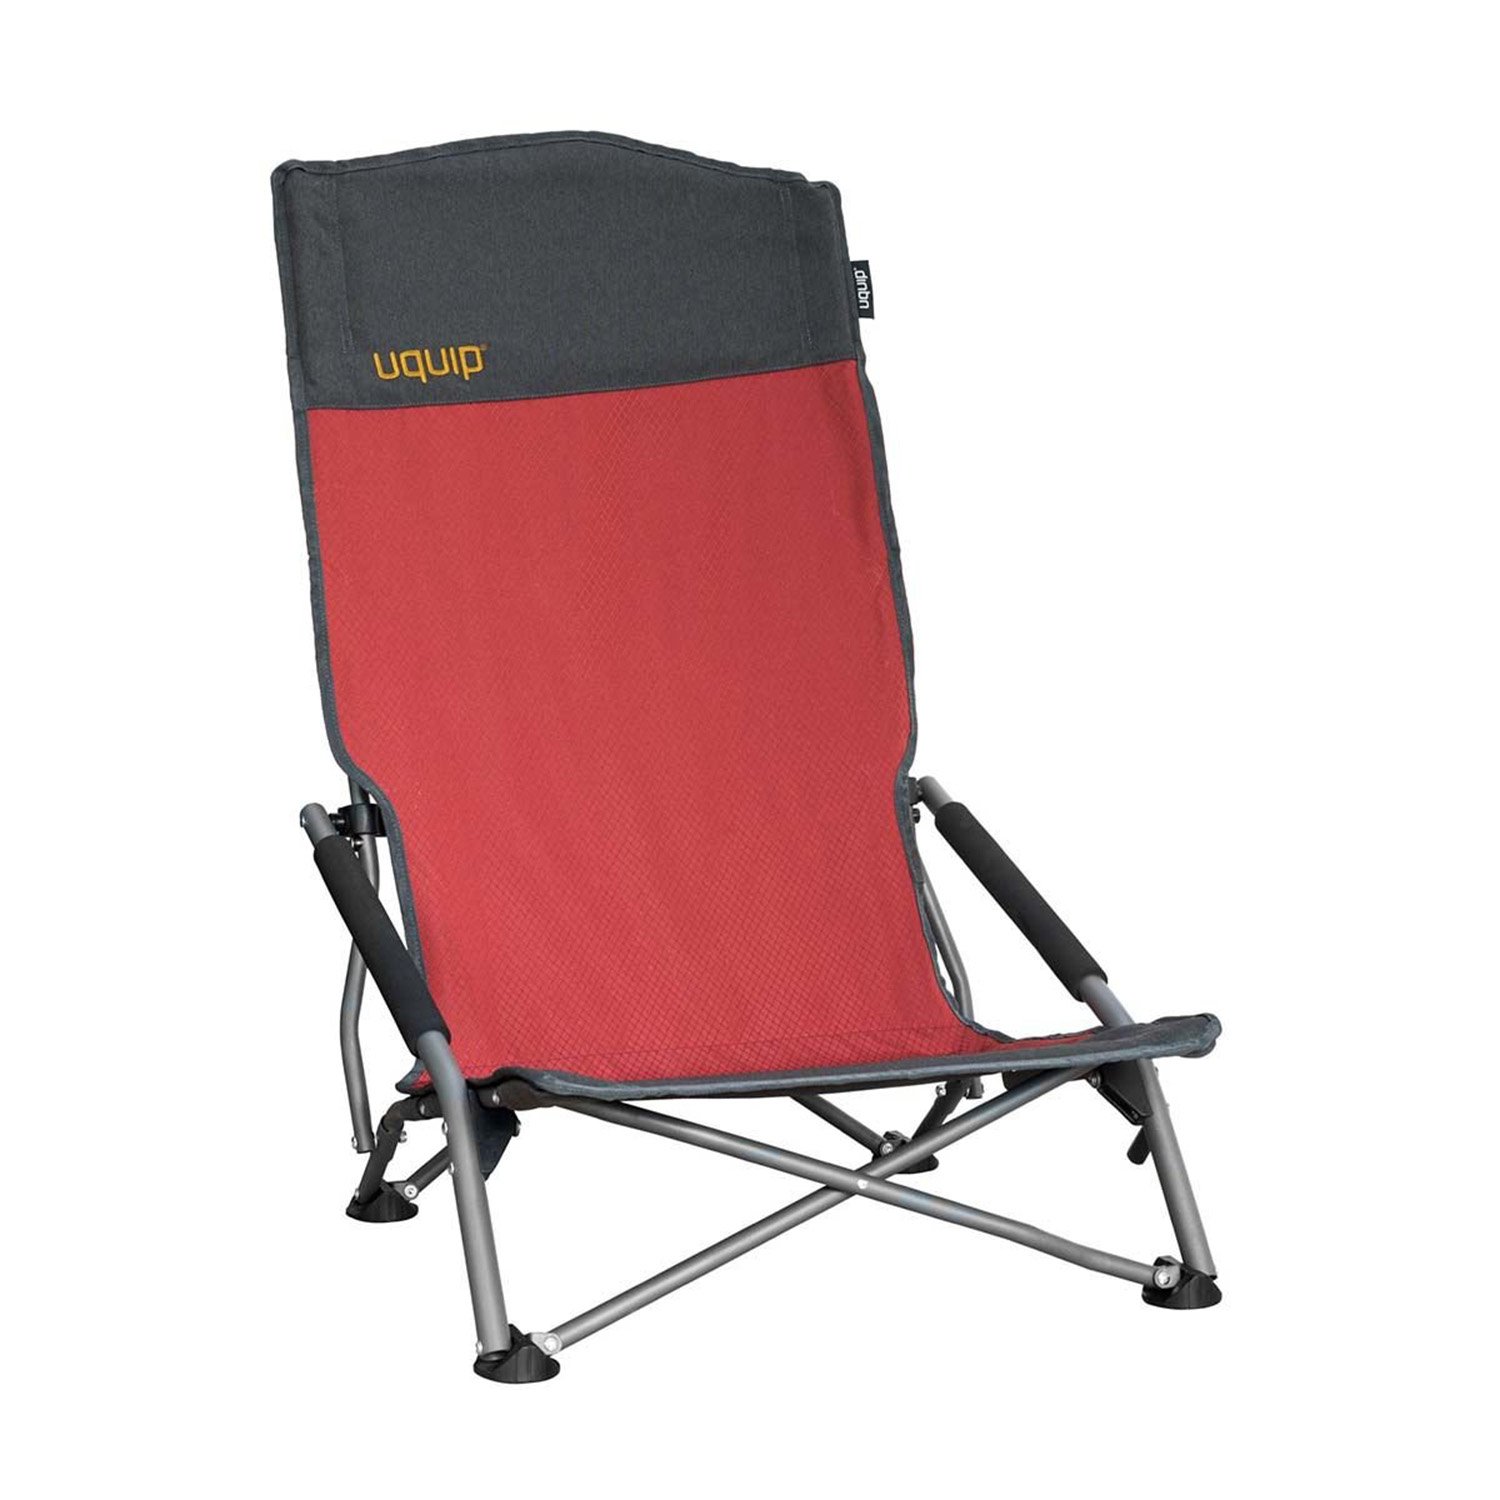 Uquip Sandy XL Yüksek Konforlu & Takviyeli Katlanır Plaj ve Kamp Sandalyesi Red - Bordo - 1